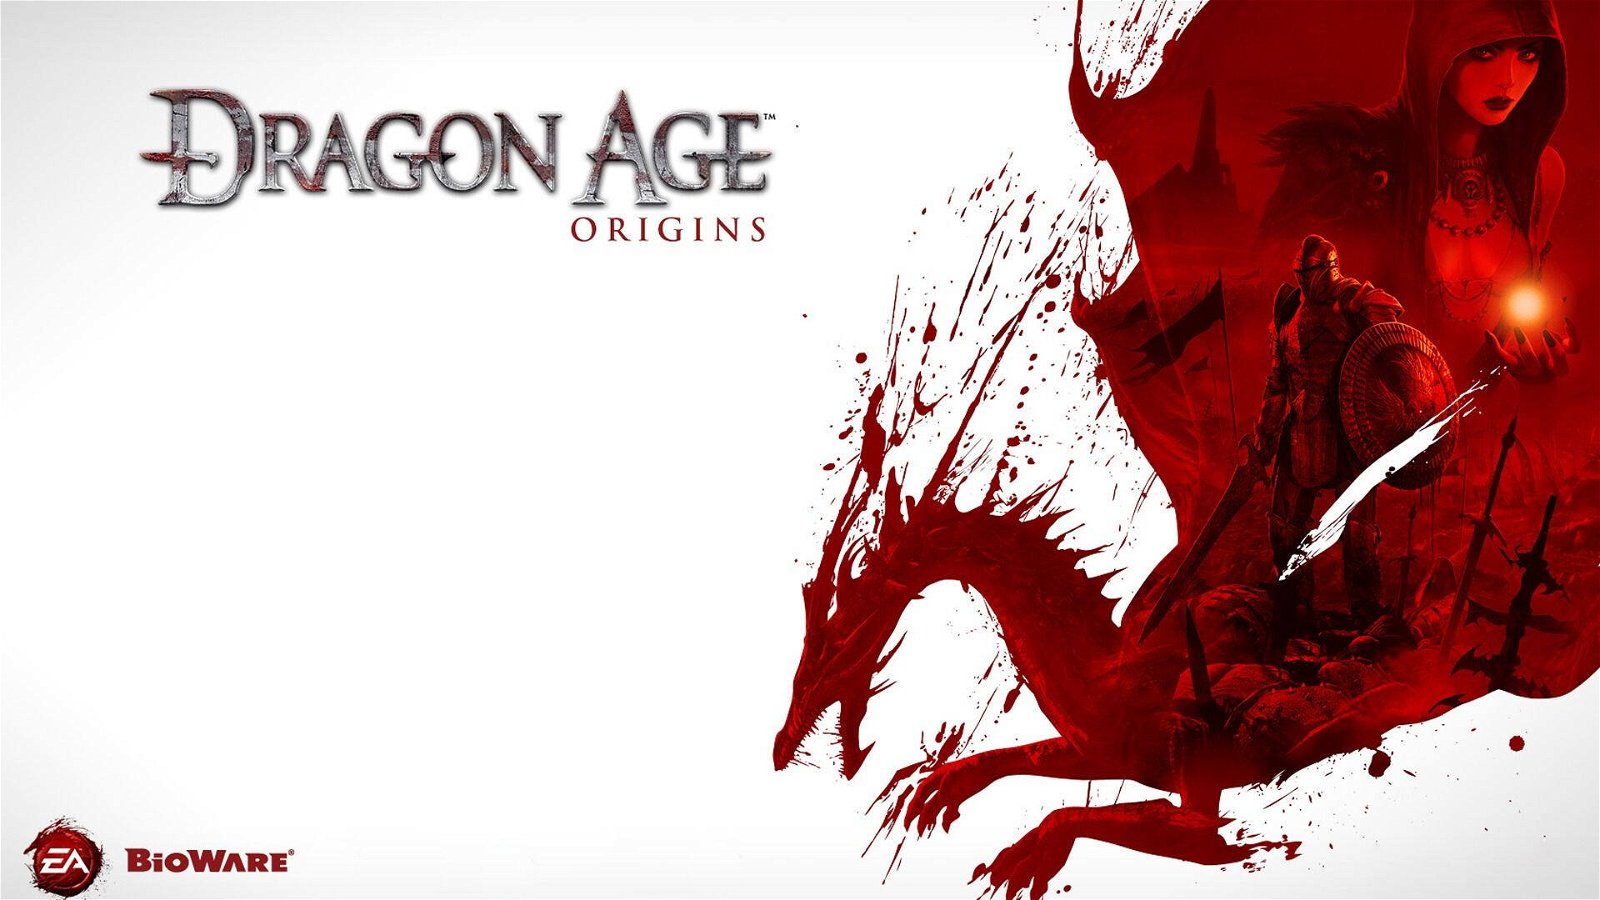 Immagine di Dragon Age in origine era sprovvisto di un elemento importante